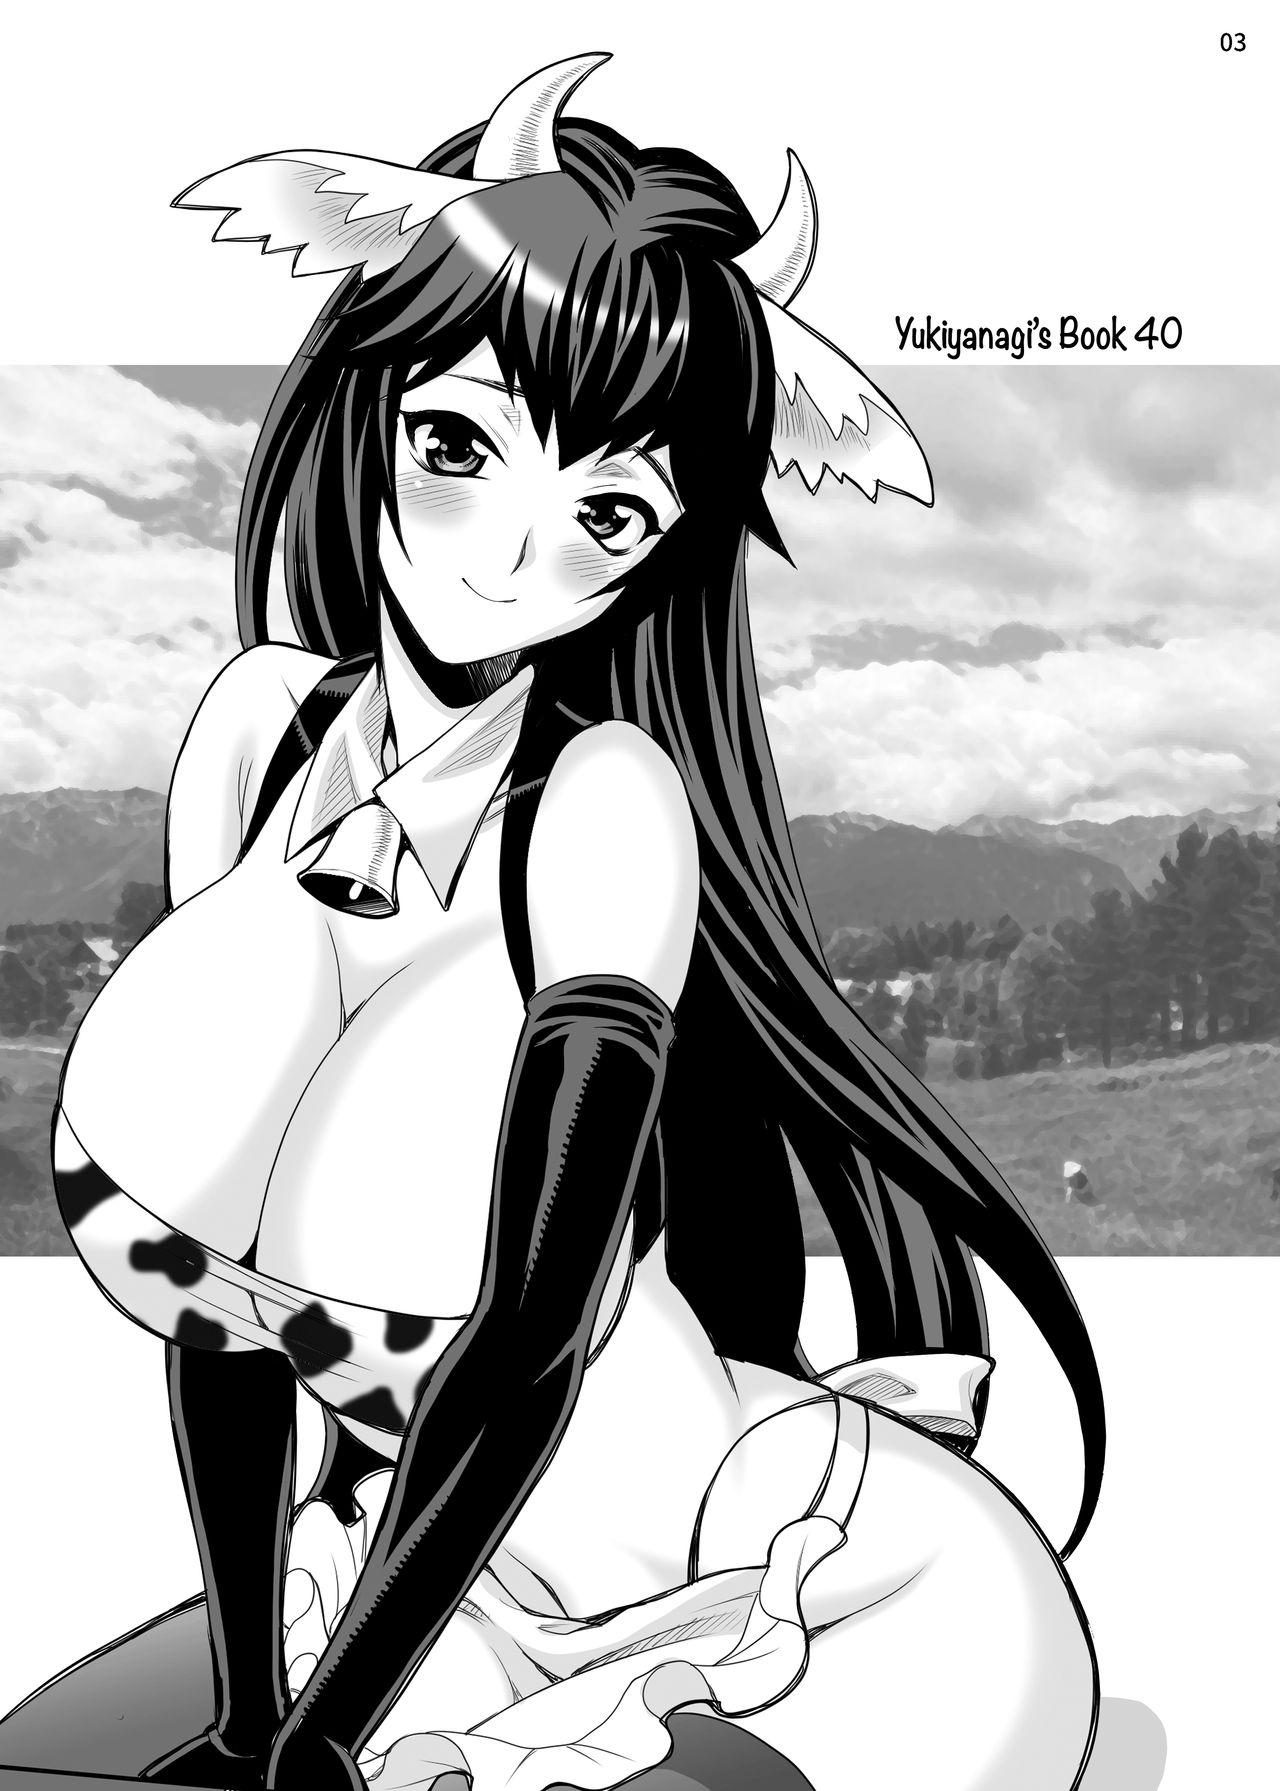 Yukiyanagi no hon 40 Bokujou e Youkoso! ! | Welcome to the Ranch!! Yukiyanagi's Book 40 1